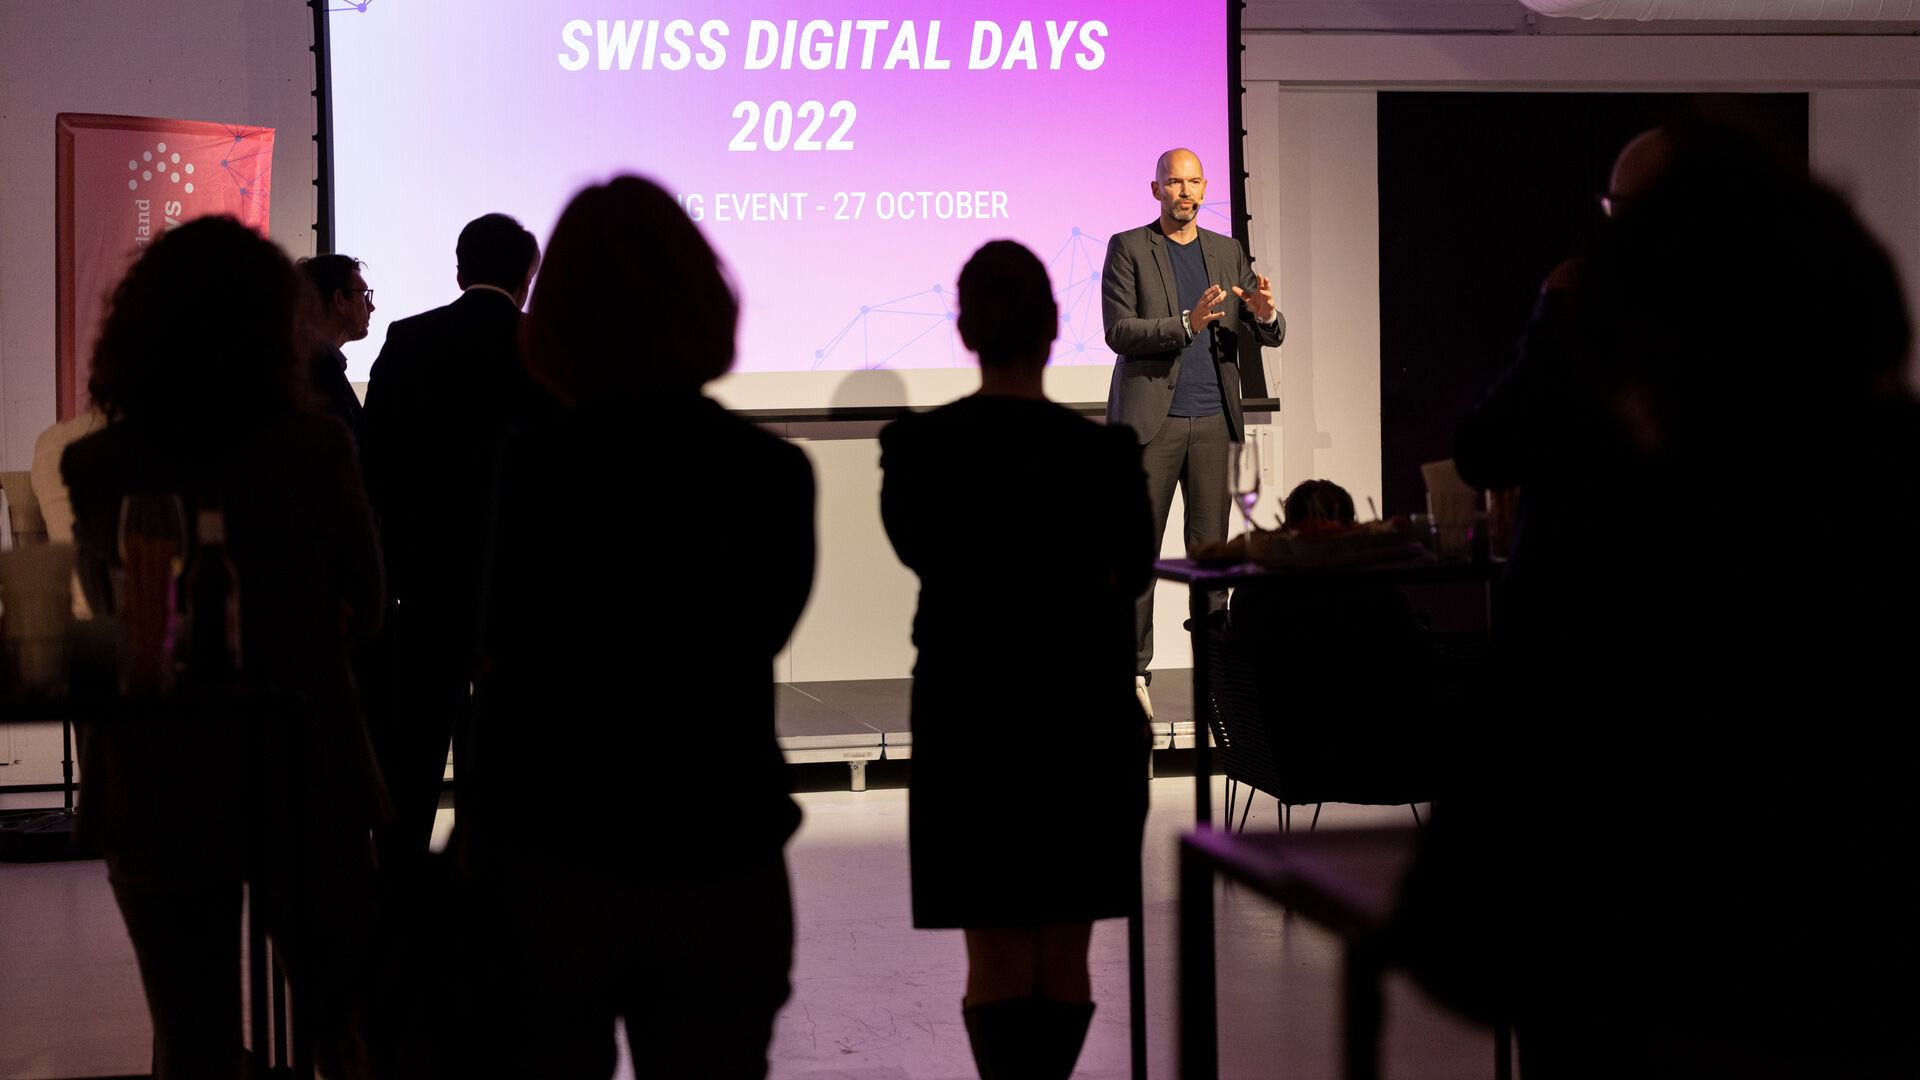 Swiss Digital Days: završni događaj "Swiss Digital Days" 2022. u Freiruumu u Zugu (Cug) 27. oktobra